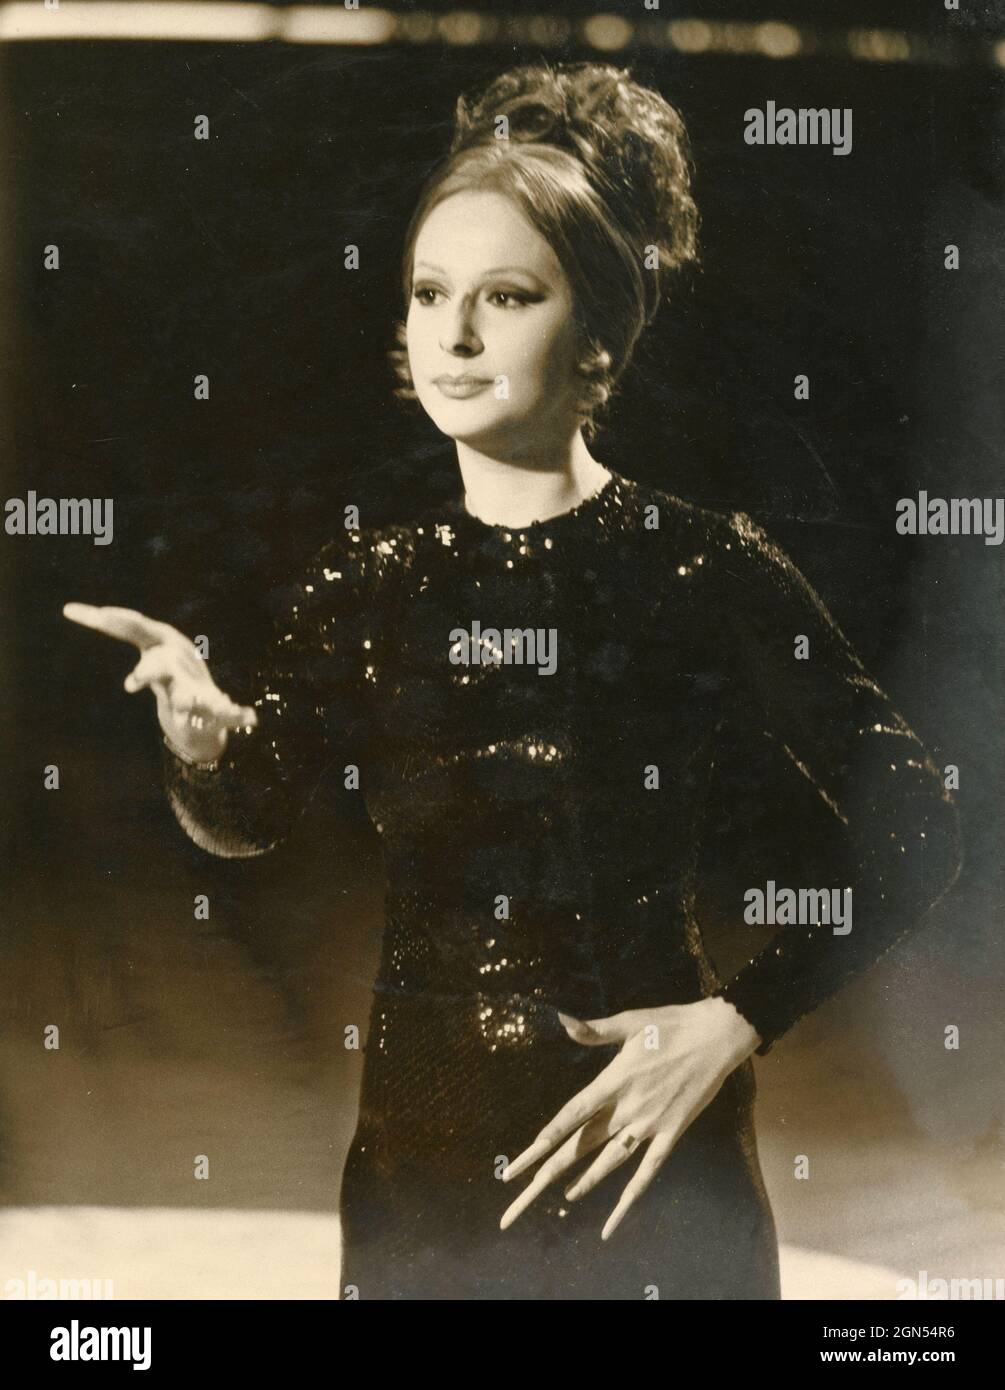 Die italienische Schauspielerin und Imitatorin Loretta Goggi spielt Barbara Straisand in der Fernsehshow Canzonissima, 1972 Stockfoto